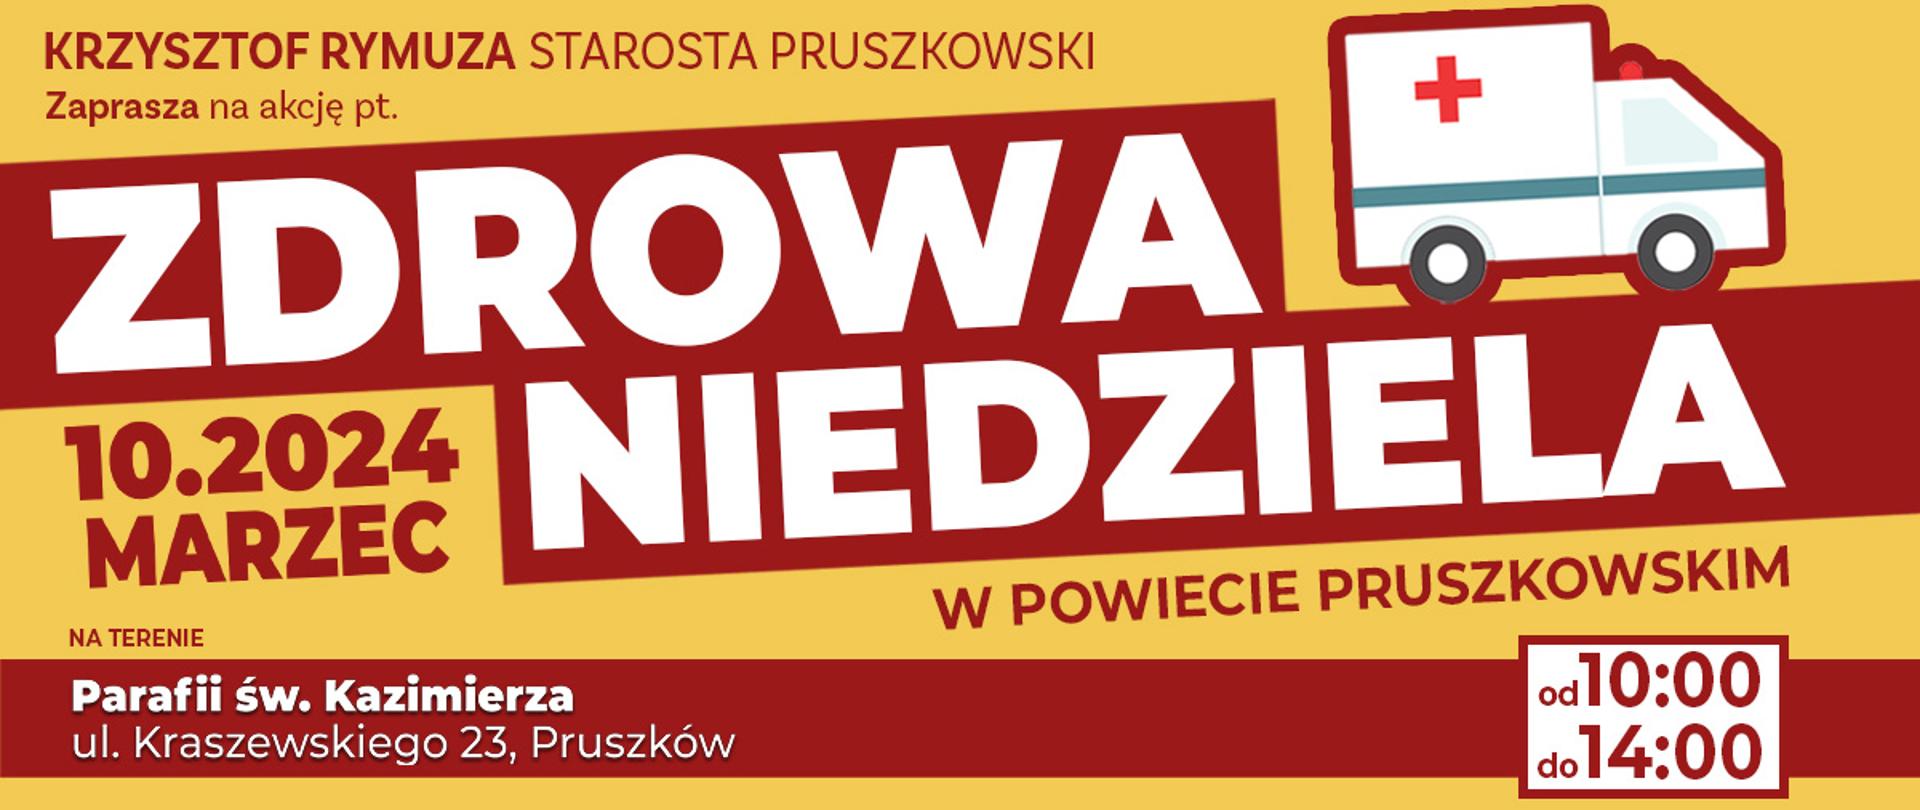 Repozytorium_-_Zdrowa_Niedziela10032024